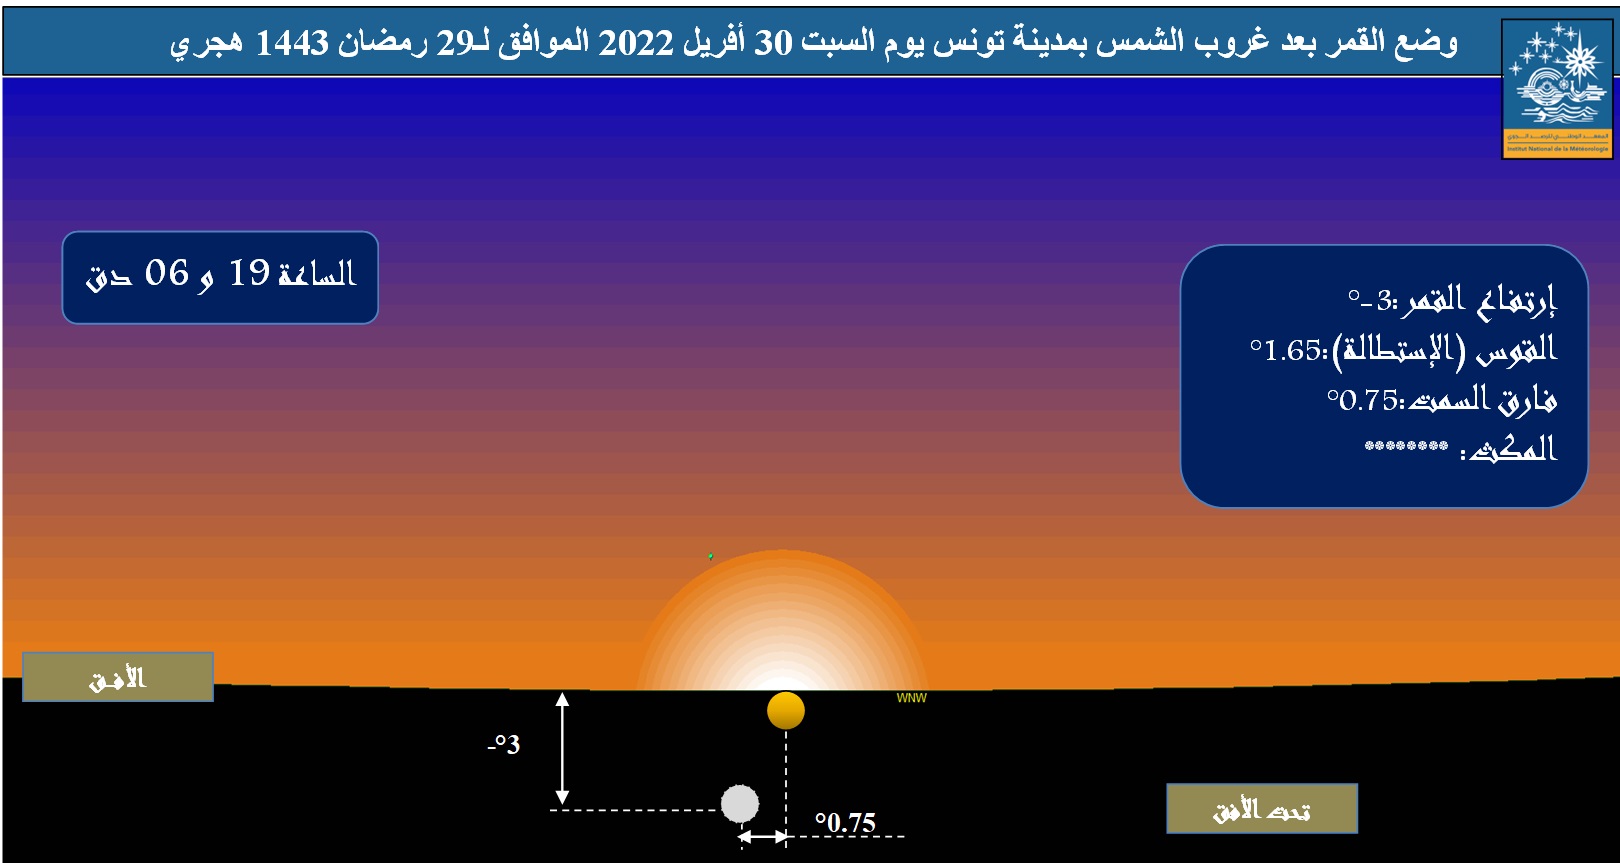 صورة 1 : وضع القمر في الأفق الغربي بمدينة تونس، بعد غروب الشمس يوم السبت 30 أفريل 2022 و تظهر الصورة المعطيات الفلكية من قوس (استطالة) و ارتفاع و فارق سمت بين الشمس والقمر.